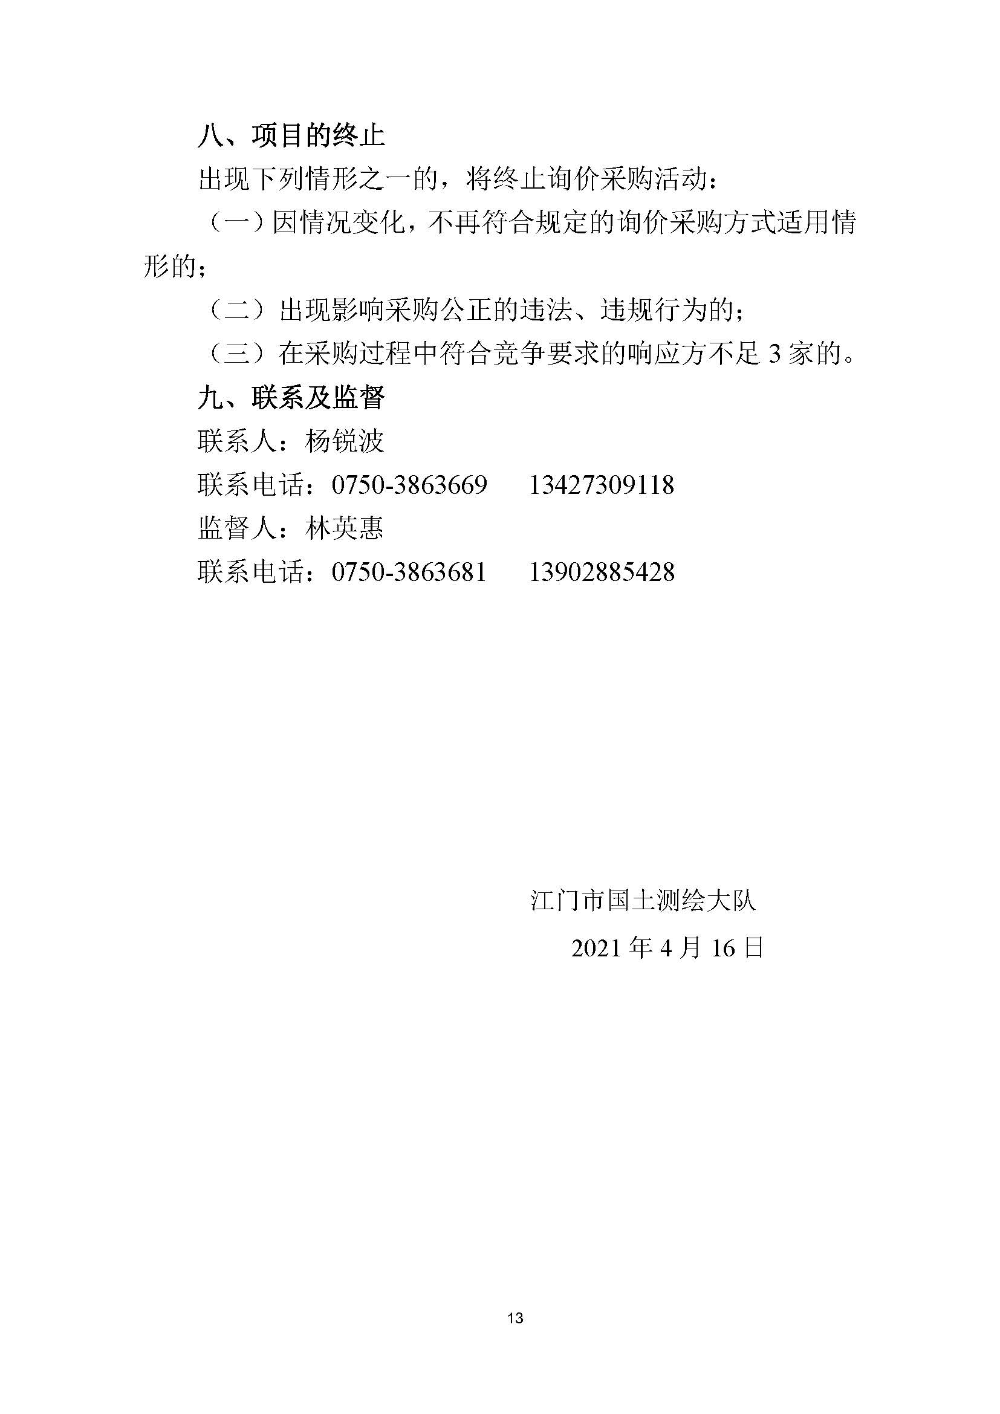 210420江门市国土测绘大队采购计算机设备维修和保养服务等项目采购公告 (13).jpg